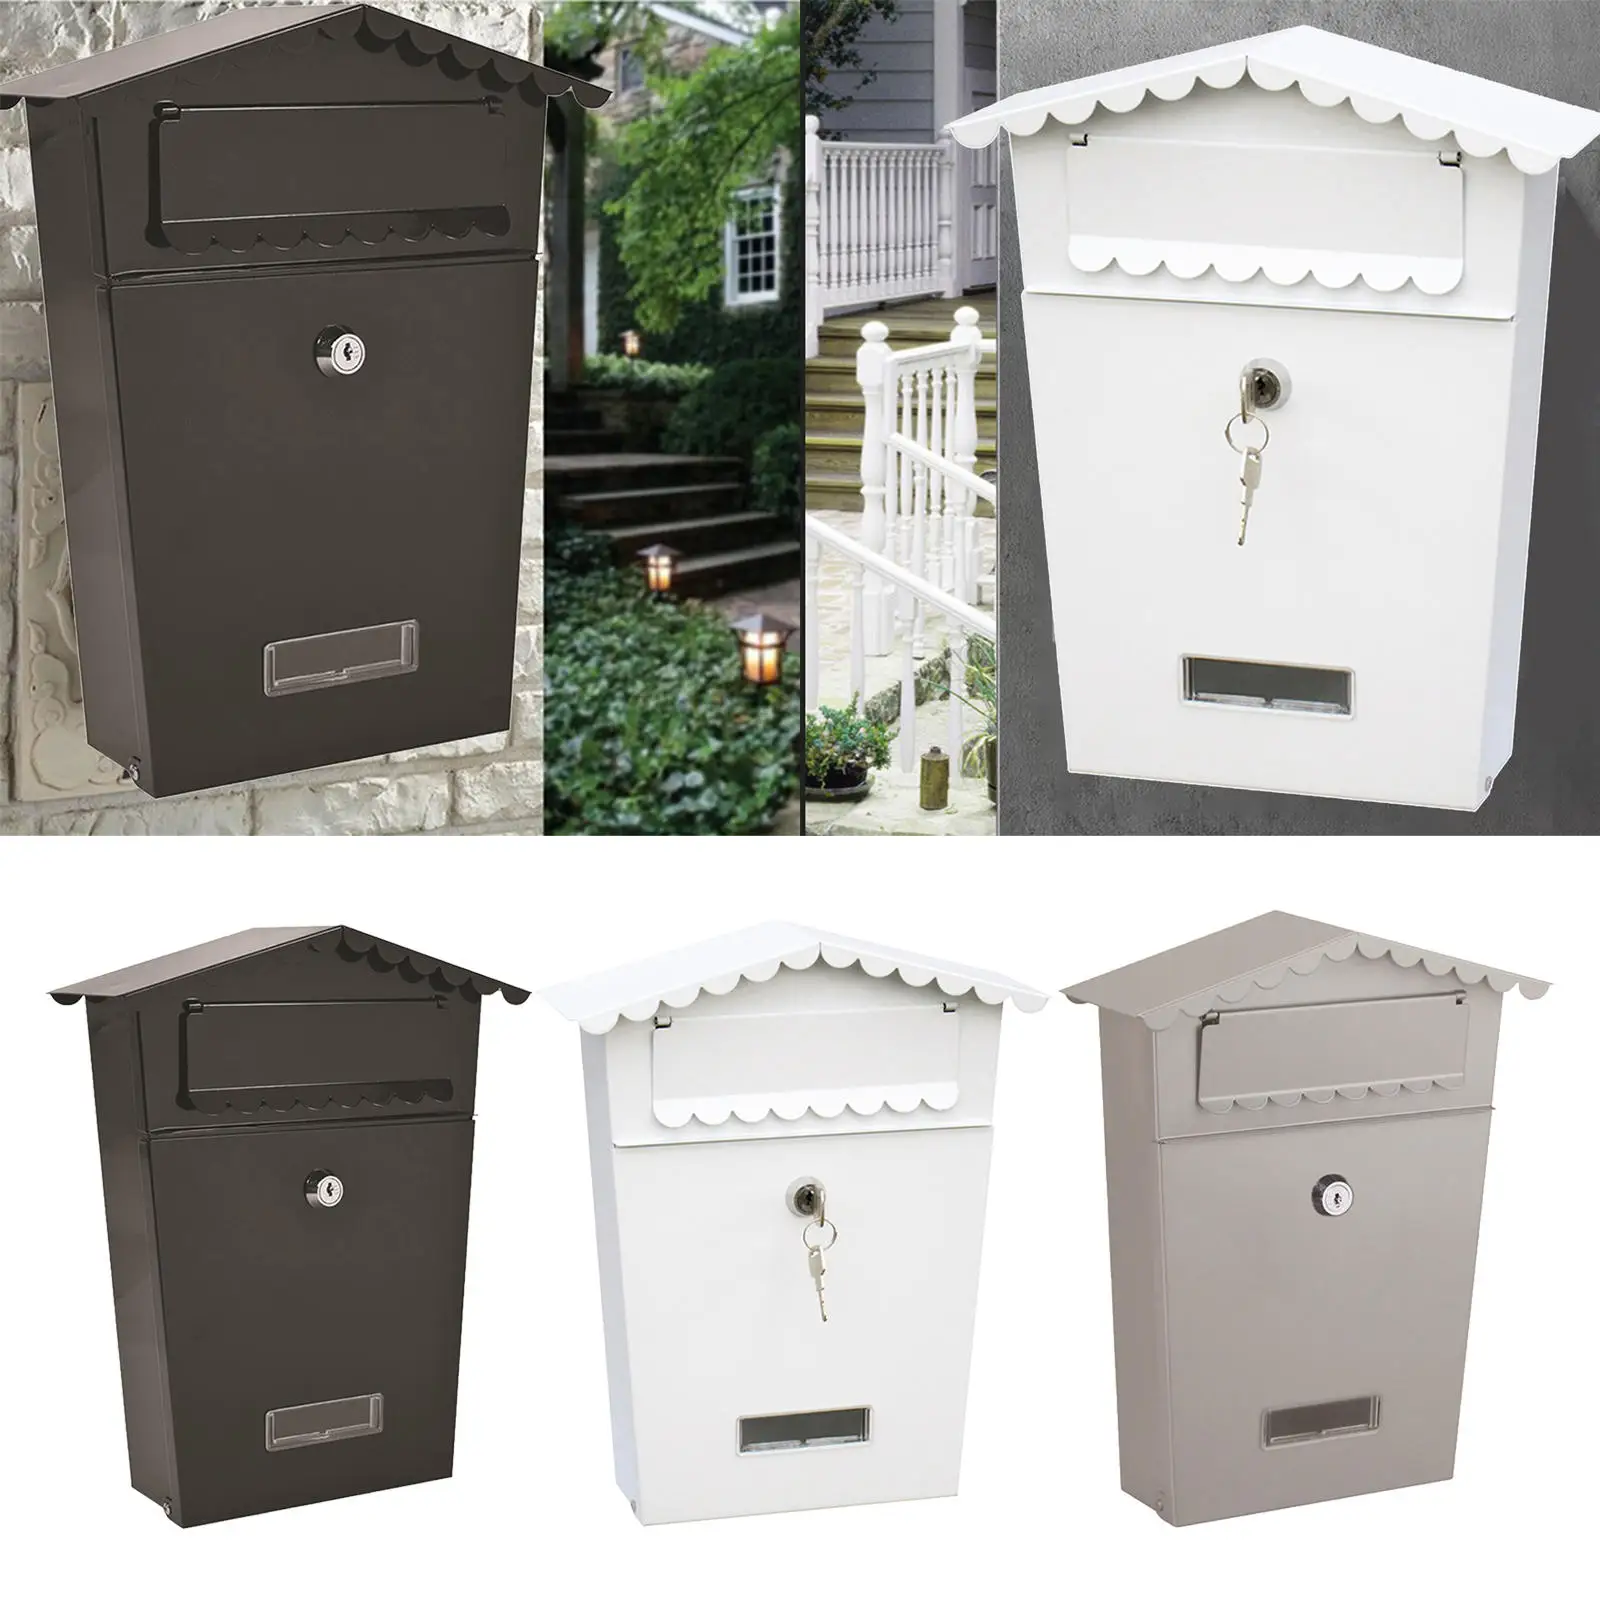 Mailbox, Security Key Drop Box, Bloqueio ao